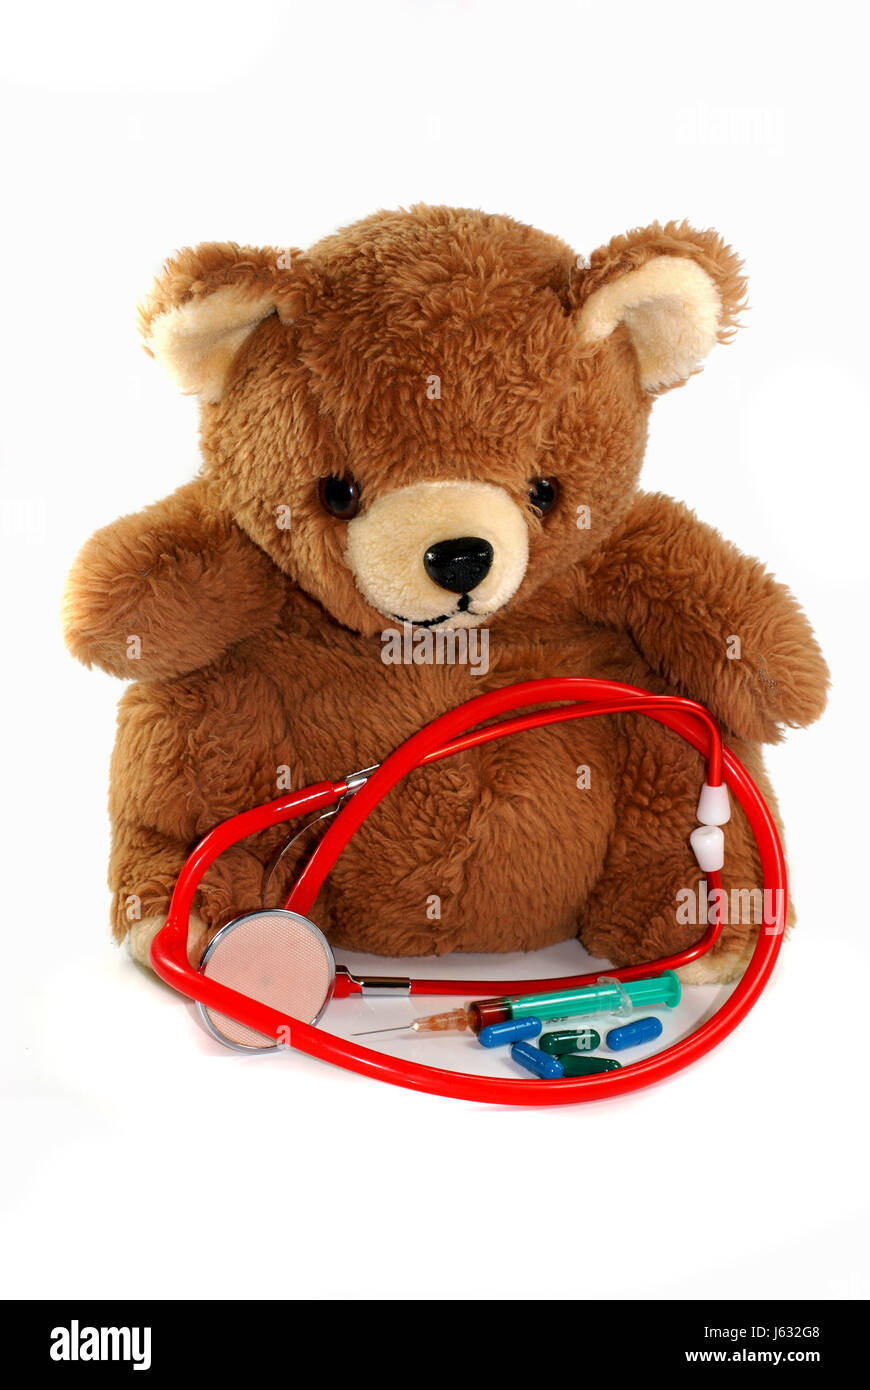 bear teddy teddy bear teddybear means agent medicine drug remedy substance Stock Photo